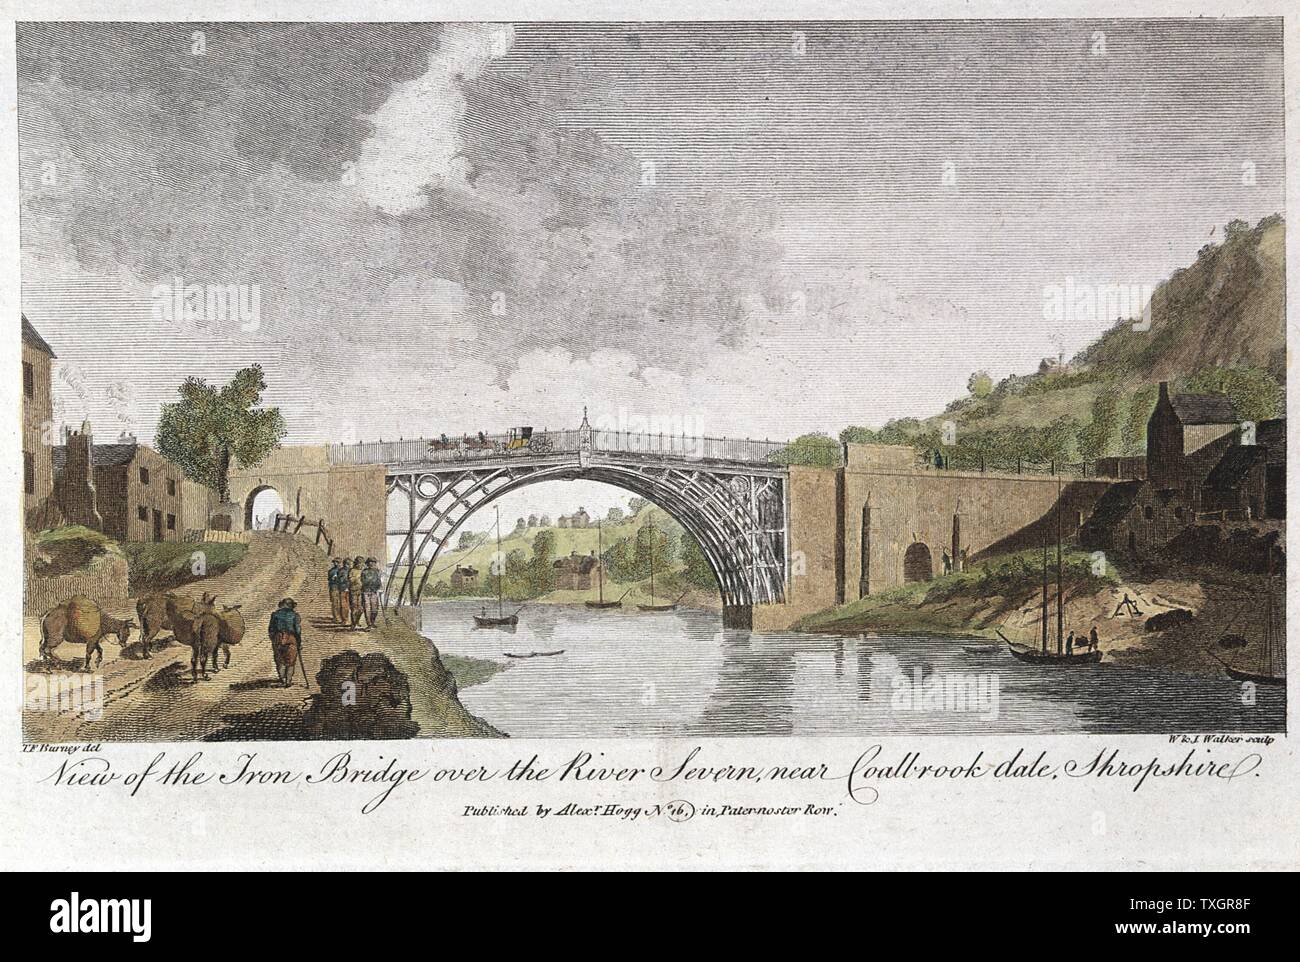 Abraham Darby III del ponte di ferro attraverso la Severn di Ironbridge, Coalbrookdale, Inghilterra. Primo ponte di ferro nel mondo, costruita tra il 1776 e il 1779. Nella parte anteriore di sinistra sono di riscontro 4 'hobblers' tirando una incisione in barca Foto Stock